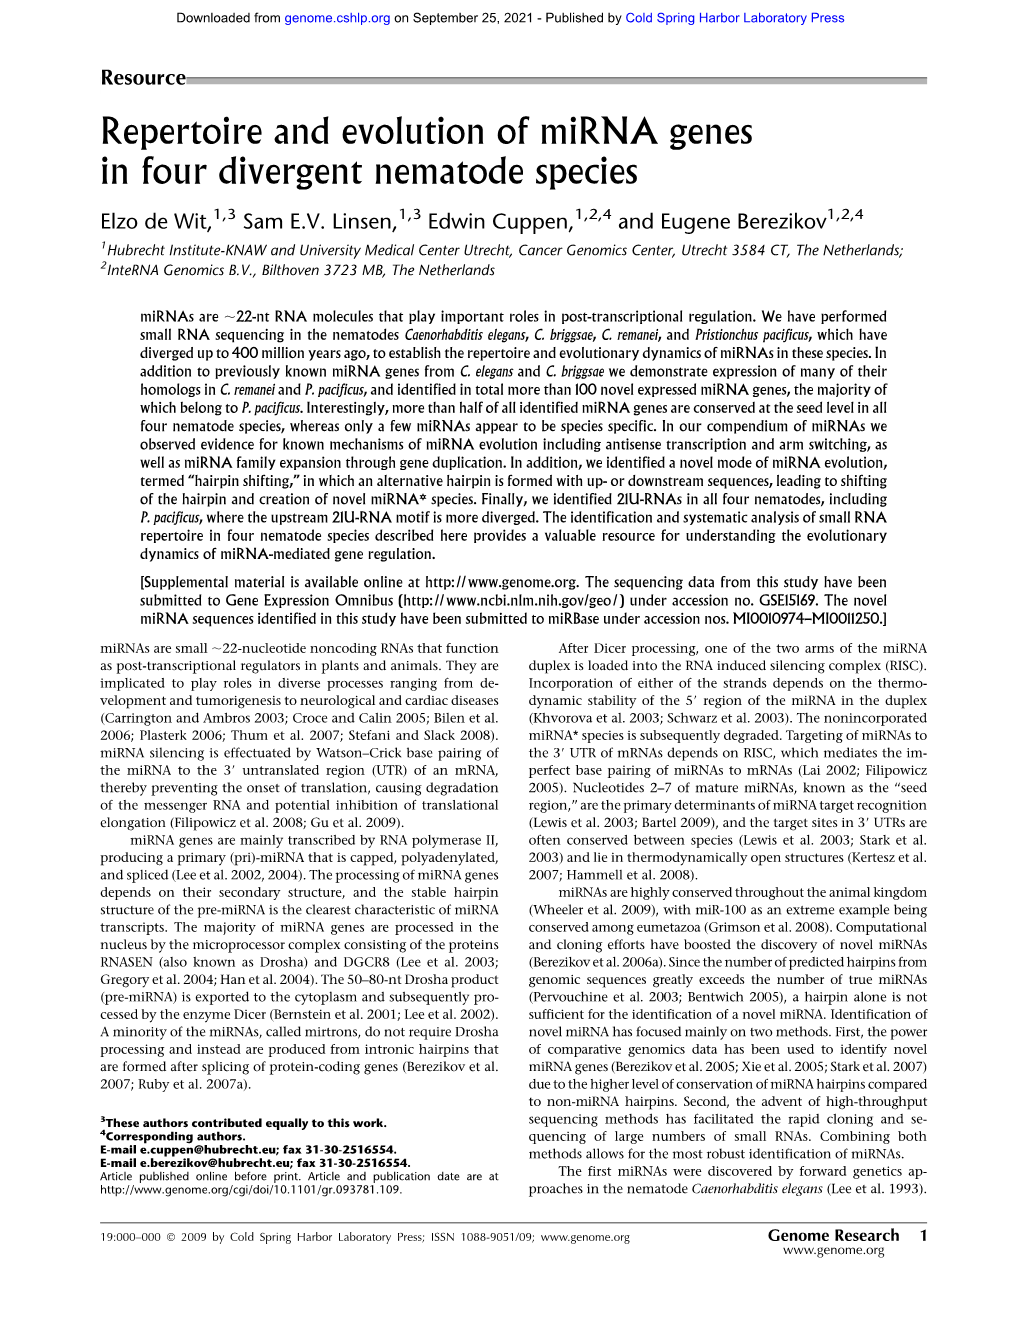 Repertoire and Evolution of Mirna Genes in Four Divergent Nematode Species